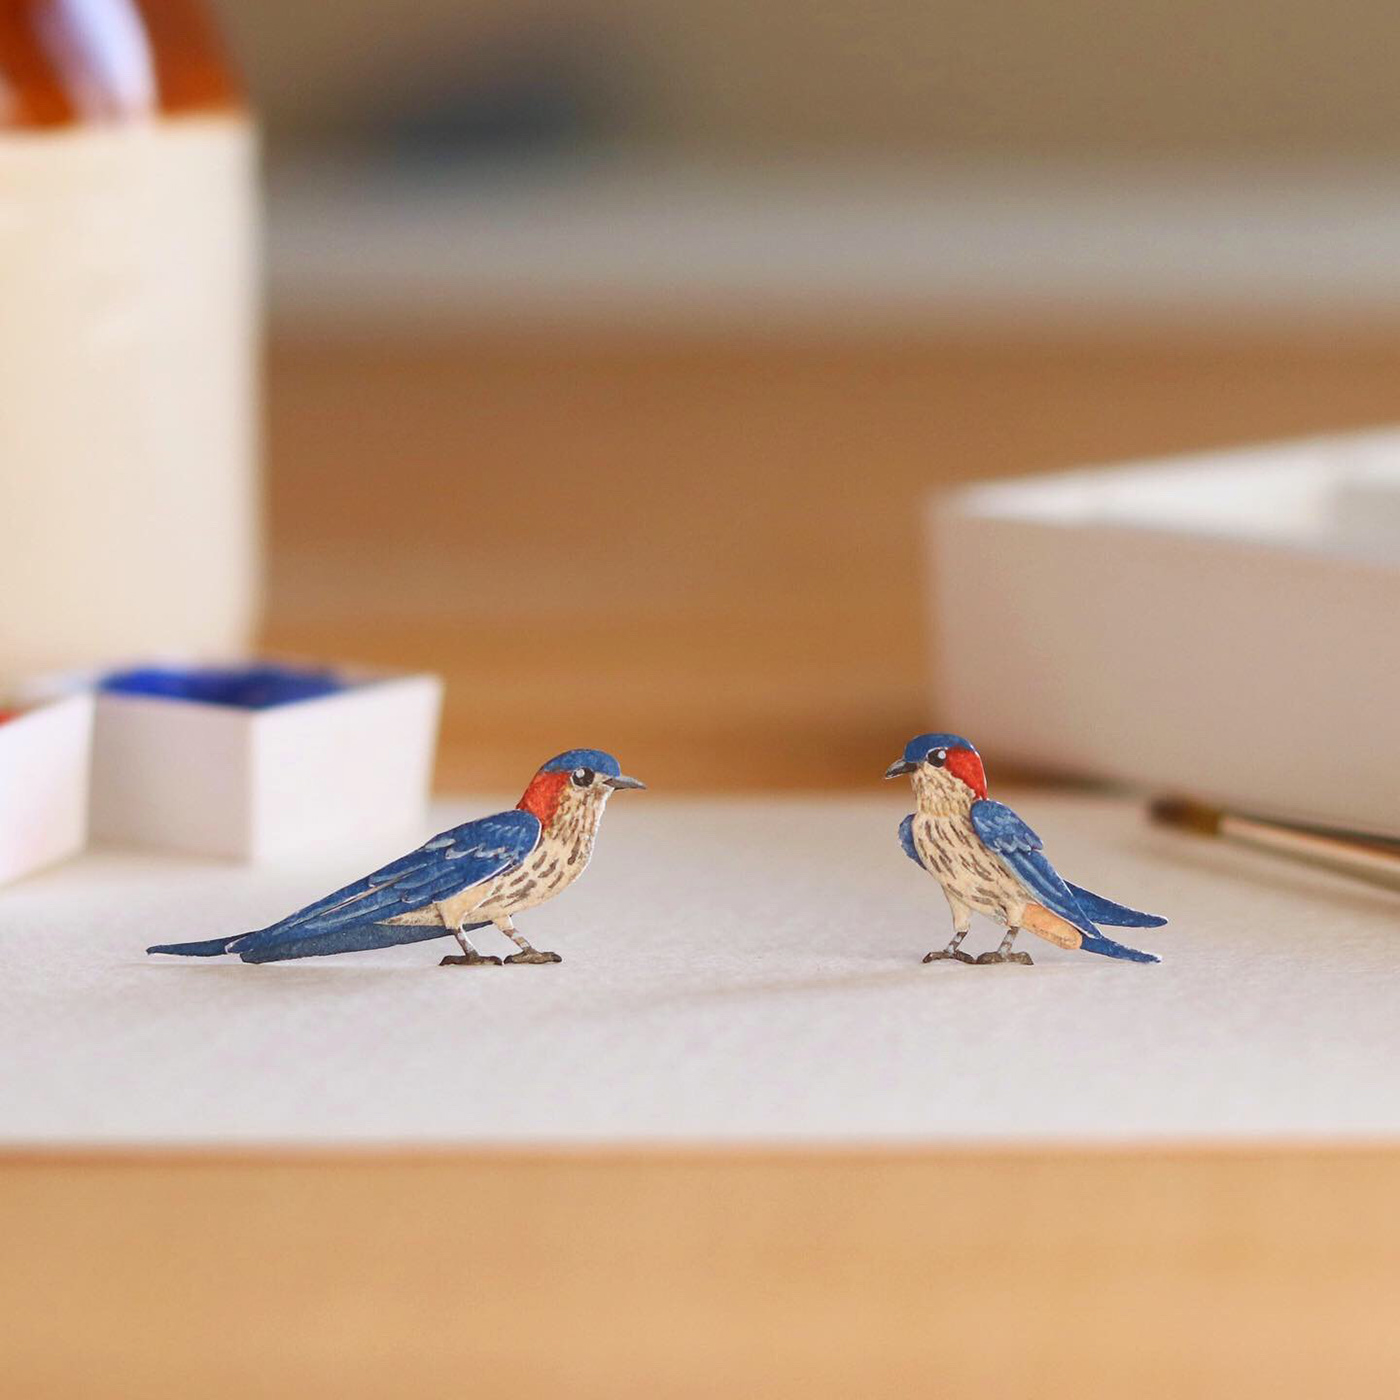 art Bechance bird contemporary art ILLUSTRATION  Miniature paper cut sculpture watercolour wildlife